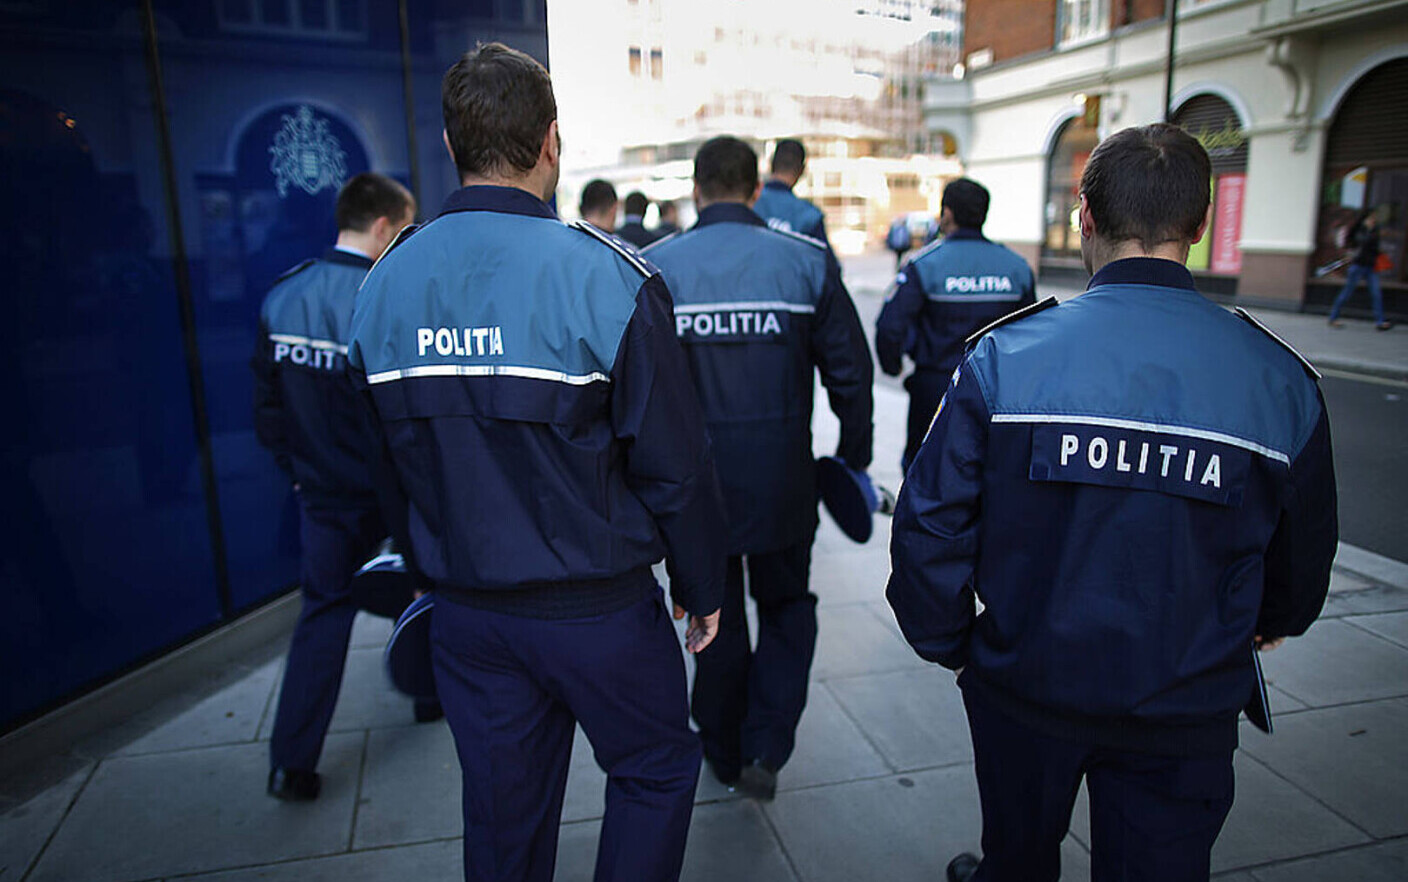 Comisar de poliție din Arad, cercetat penal după ce ar fi furat o găleată din casa unui localnic